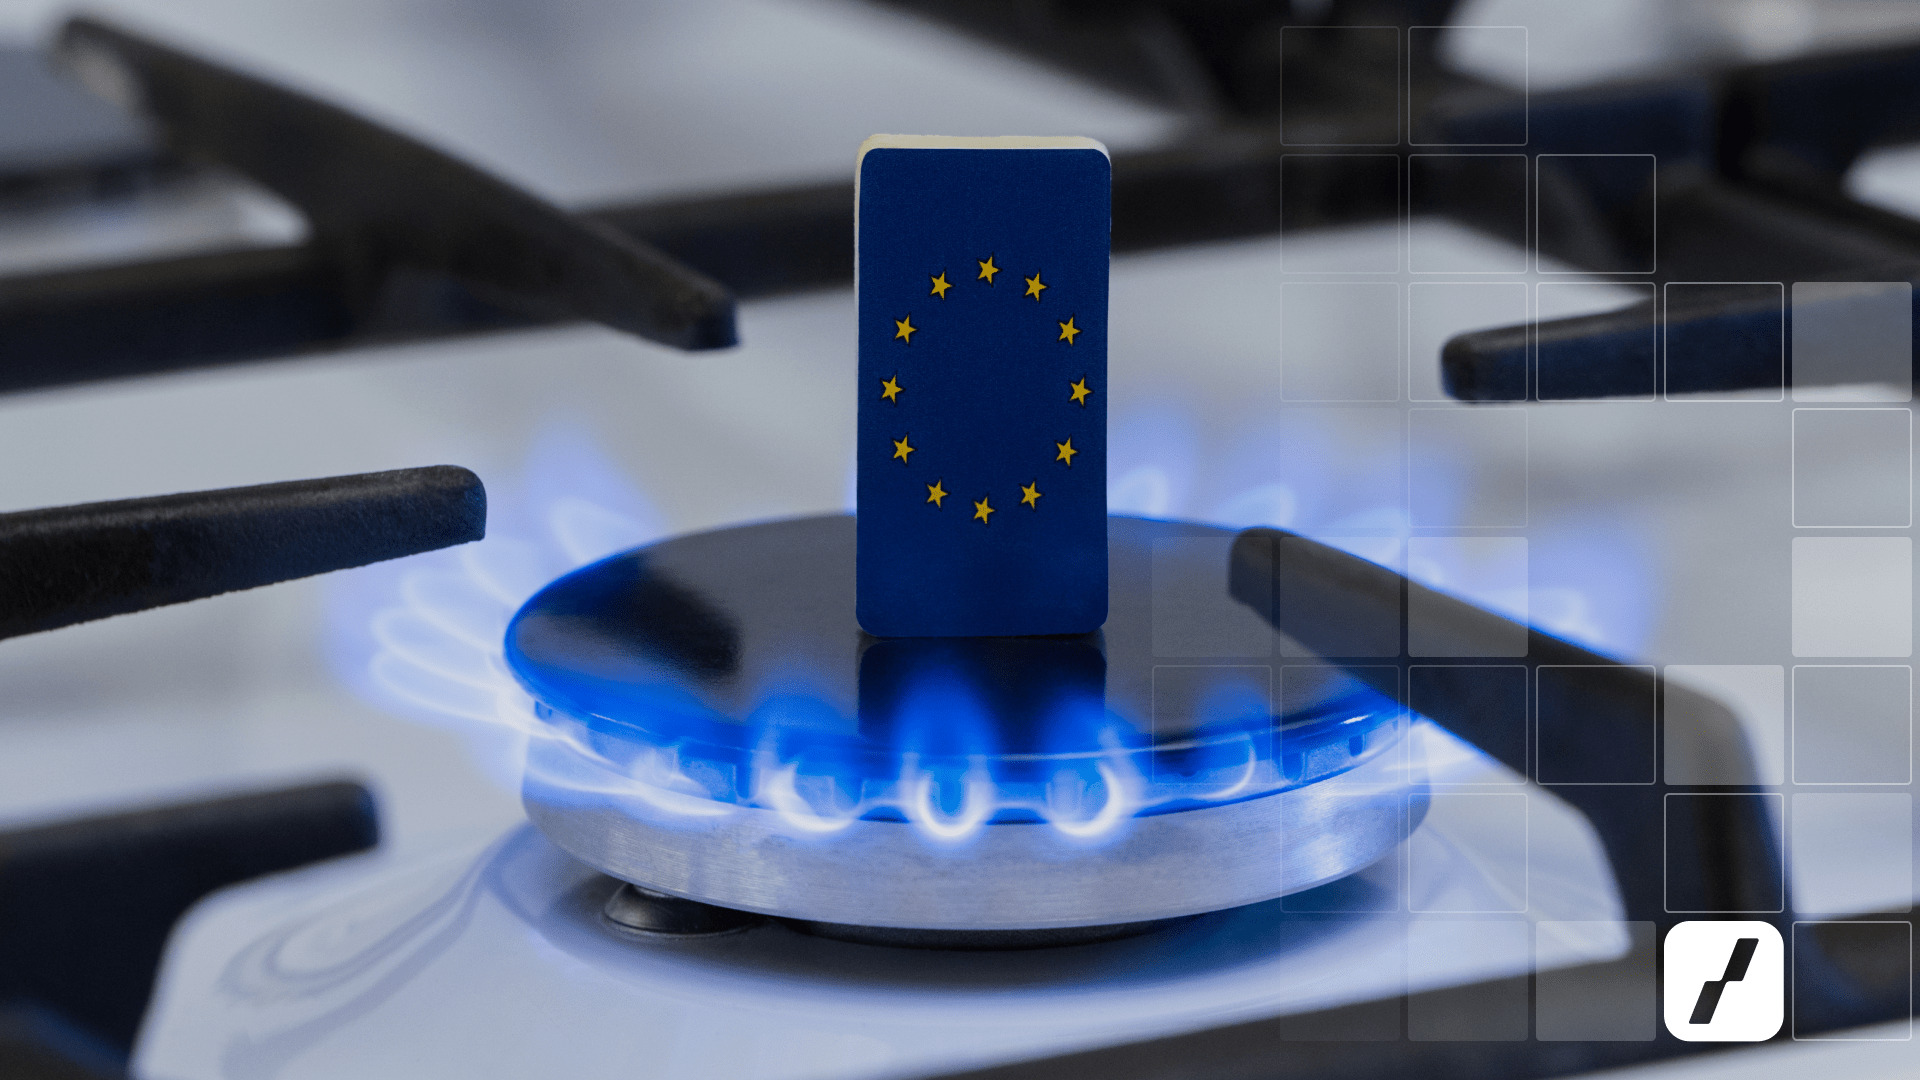 Plynový hořák s vlajkou EU